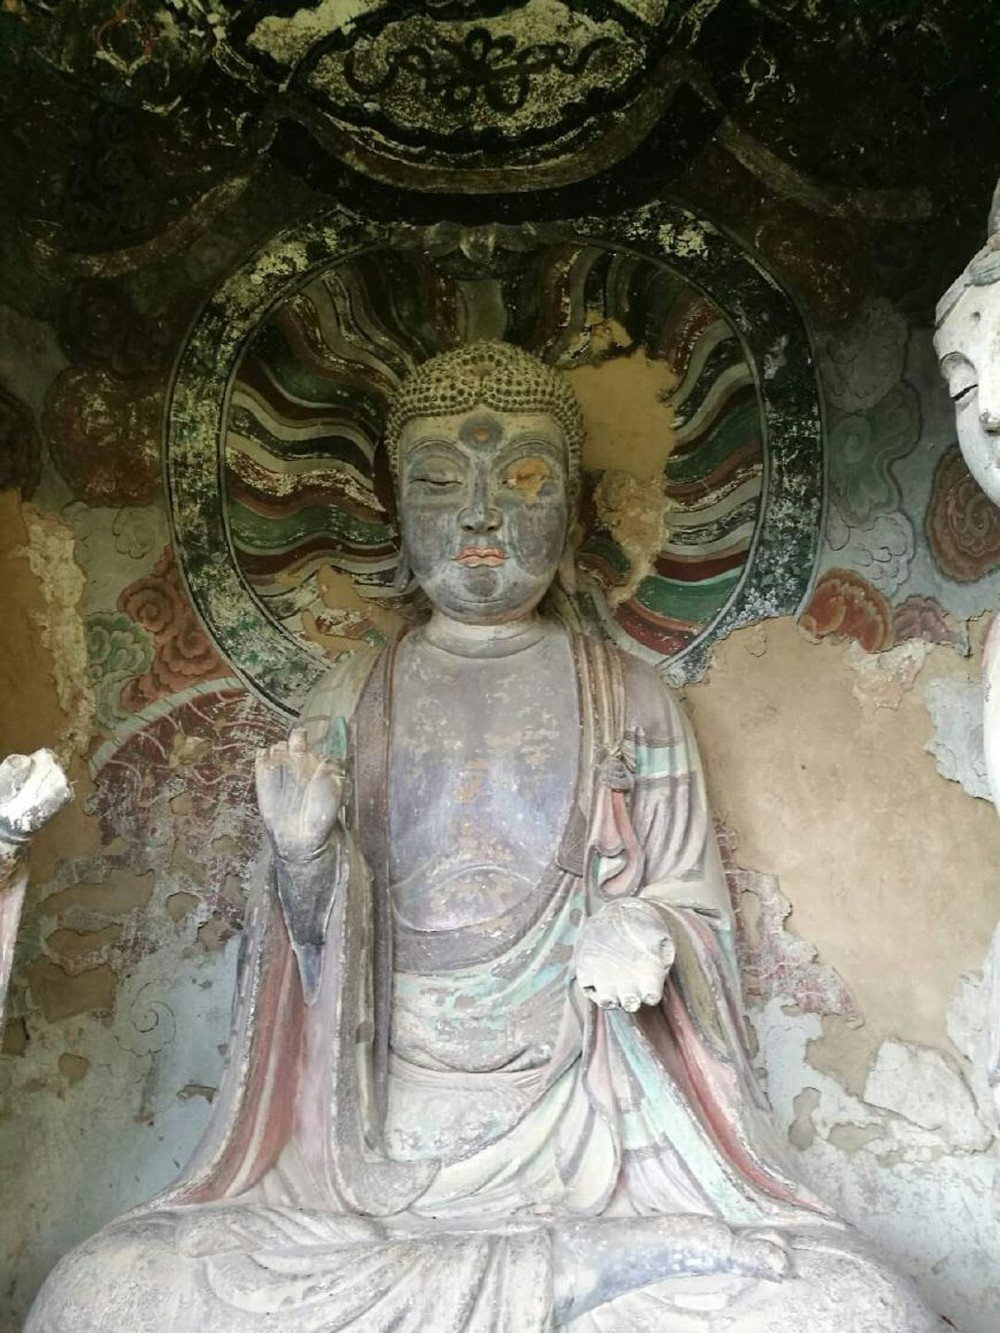 Ly kỳ bức tượng Phật bị mất một con mắt ở Mạch Tích: Chứng kiến cảnh ở chân núi mới thực sự khó tin - Ảnh 1.